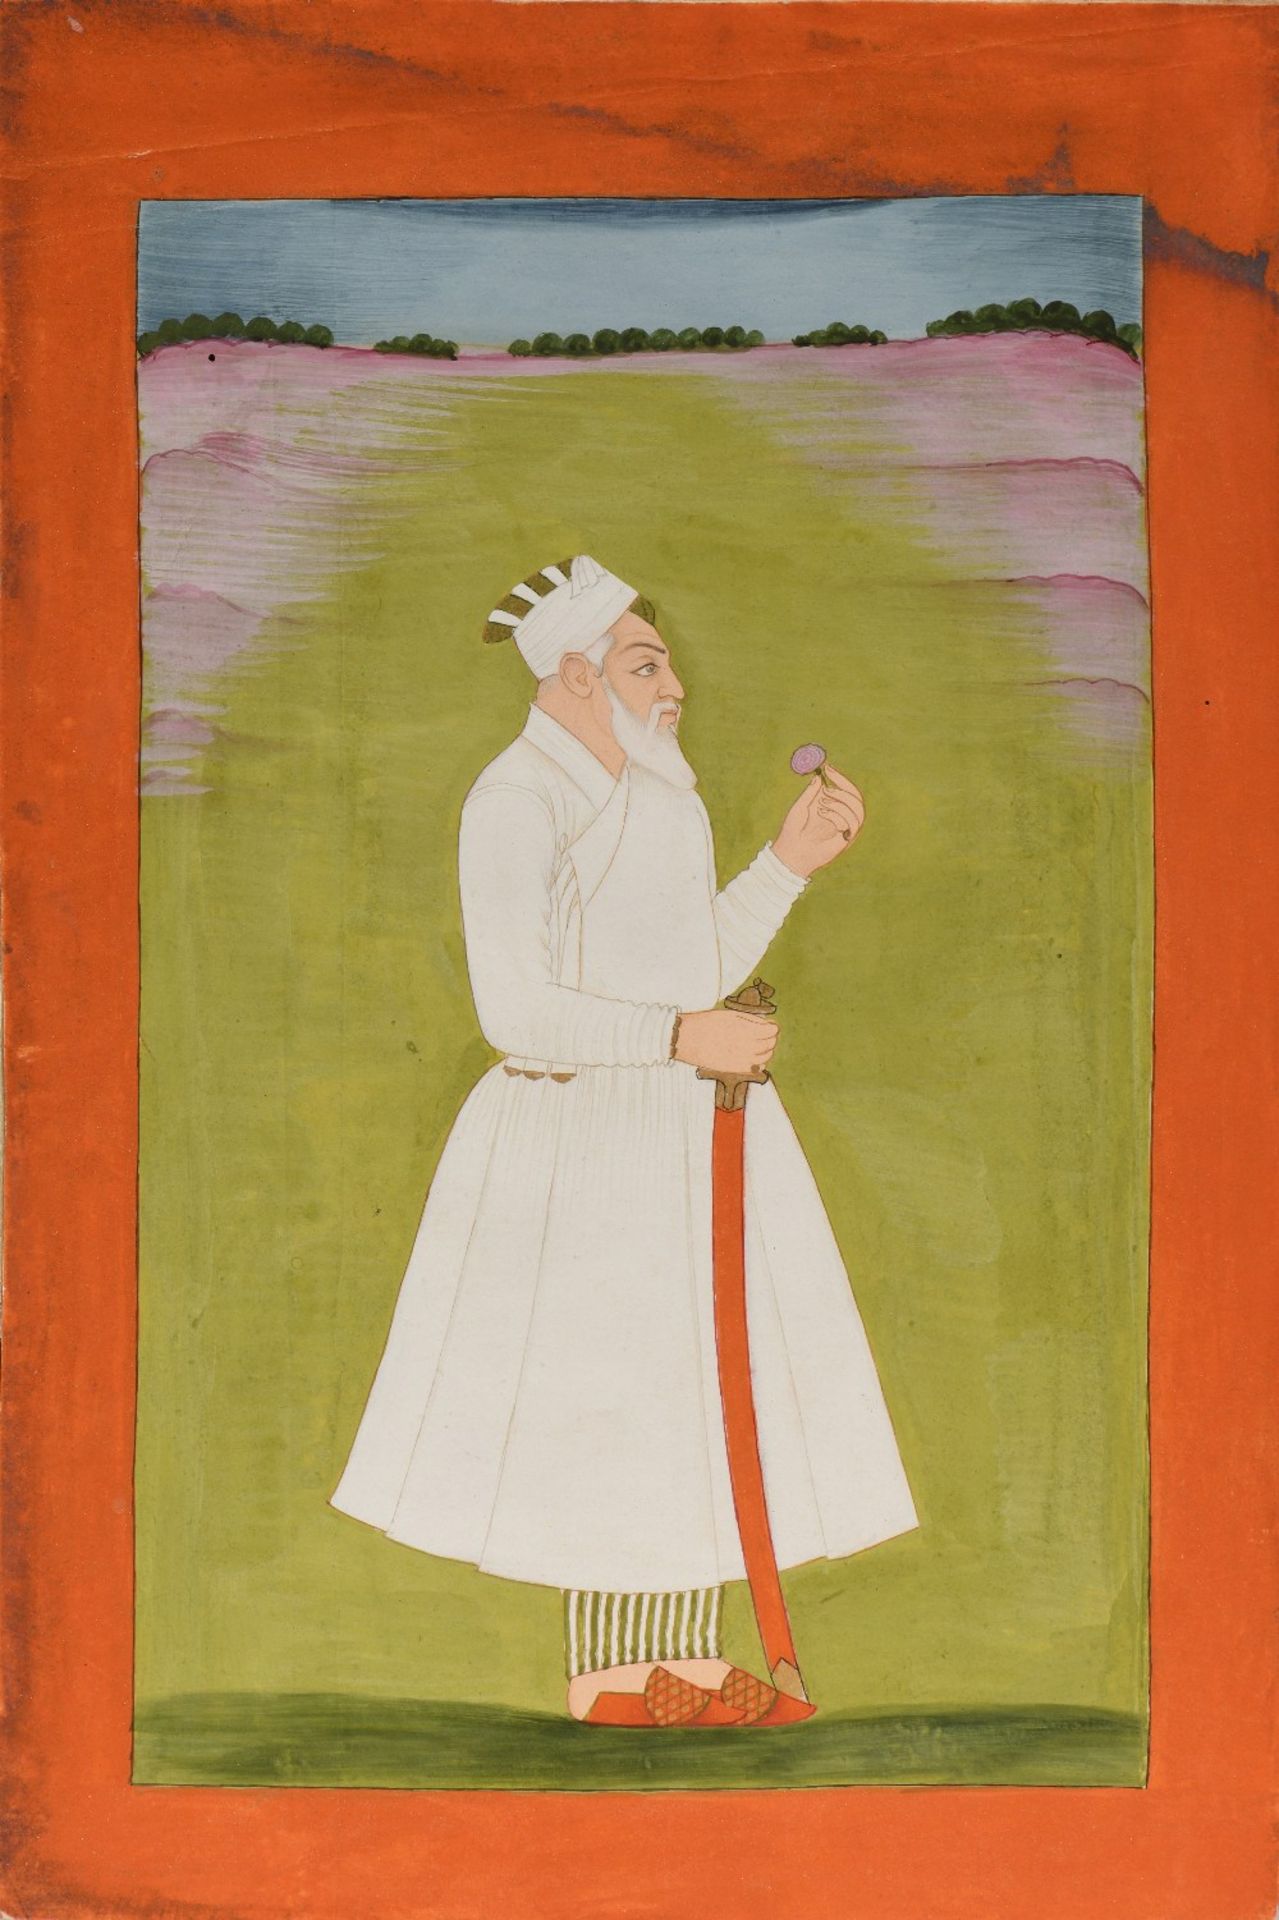 Portrait probable de Nizam al-Mulk (1671 – 1748)Inde, Deccan, Première moitié du XVIIIe